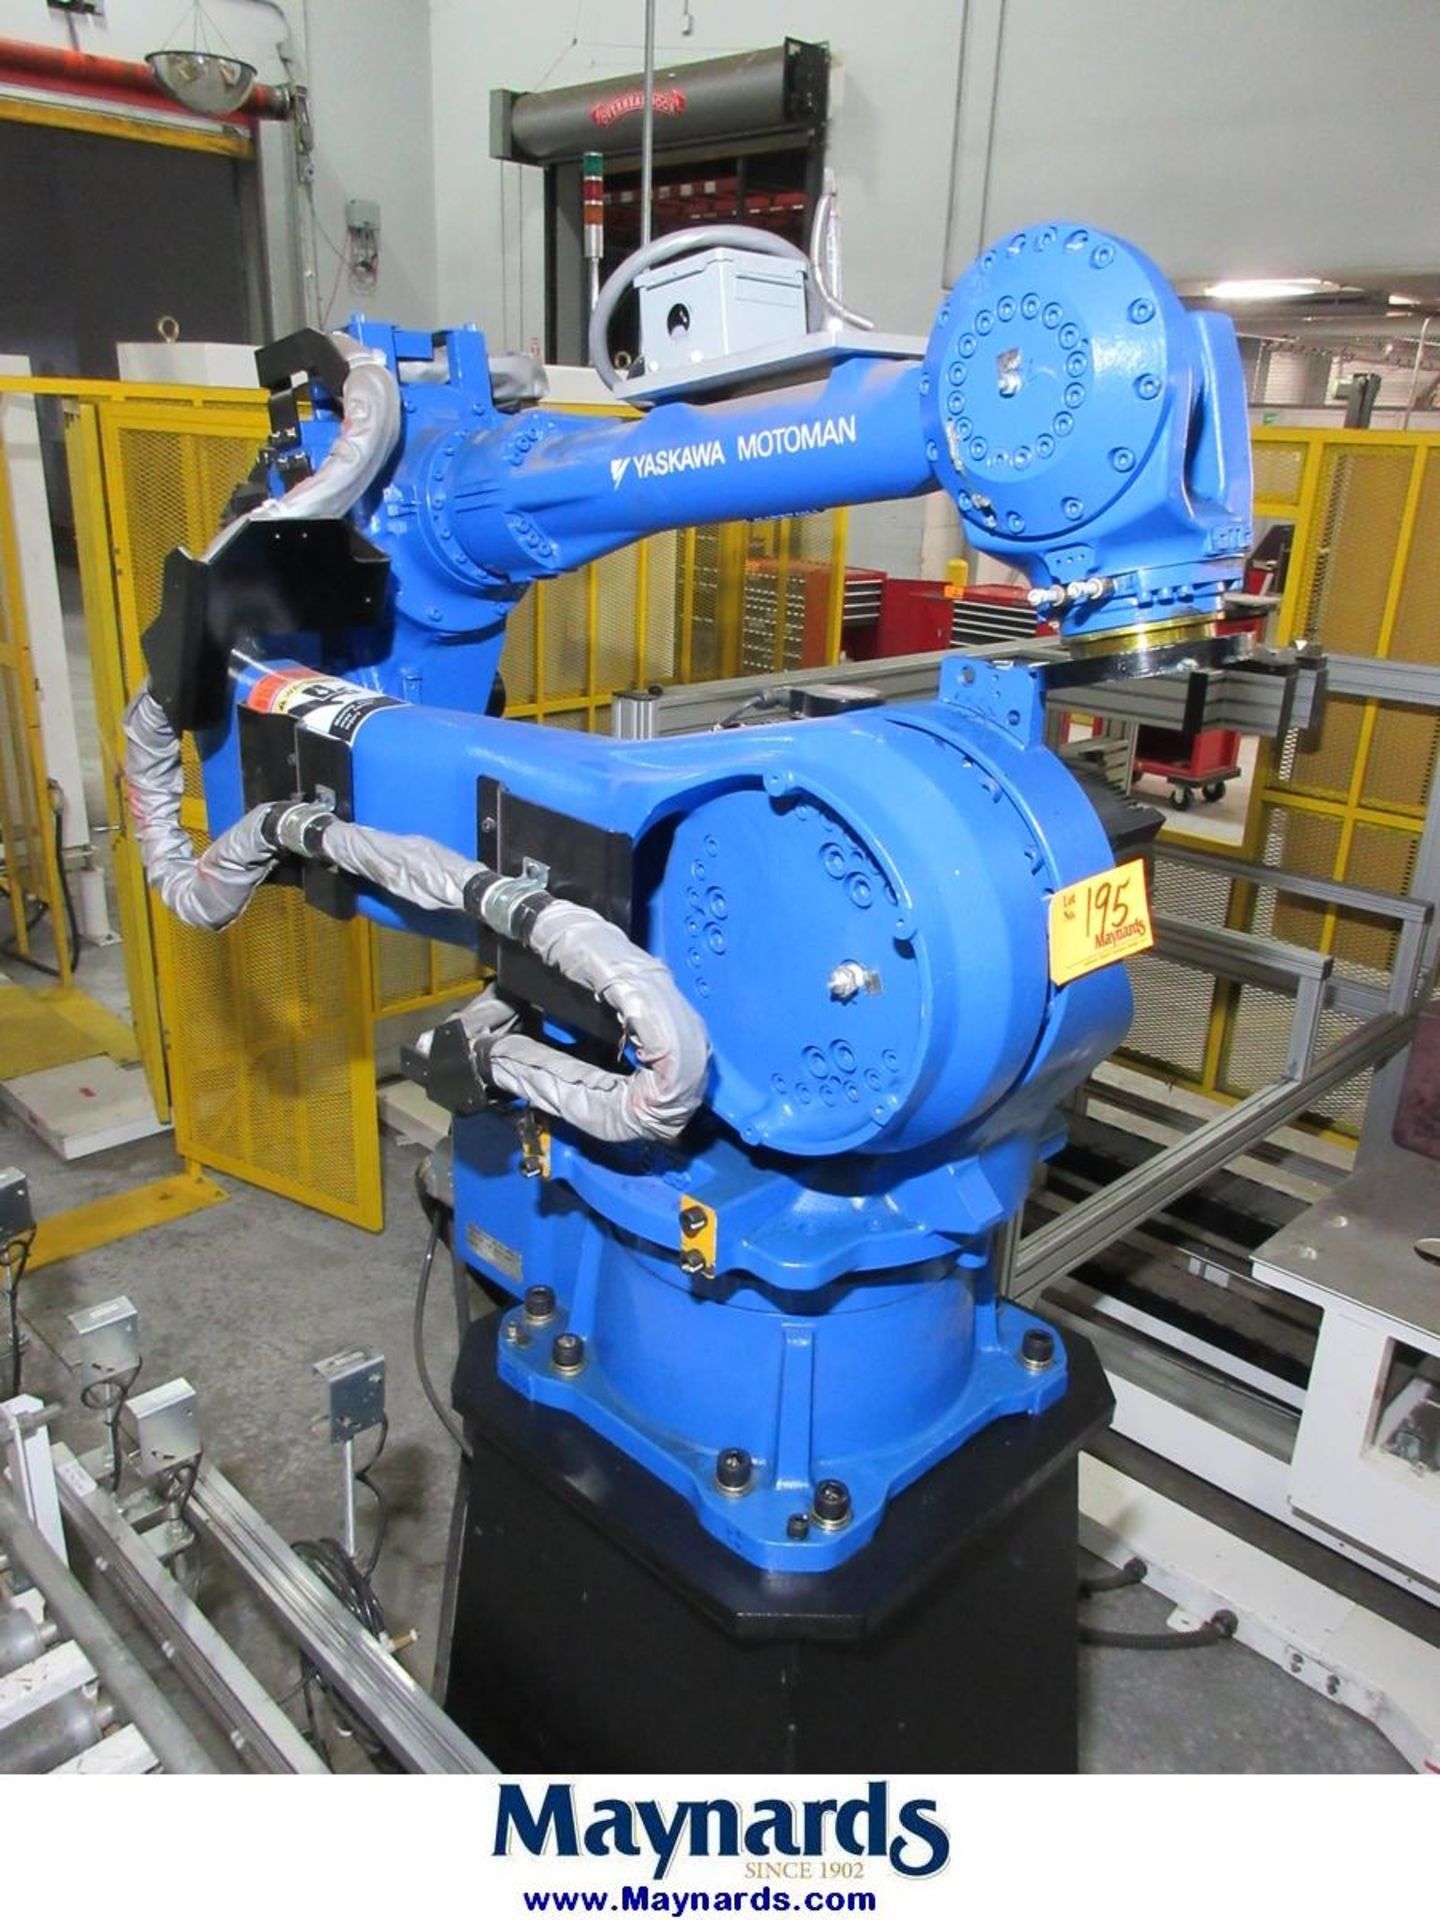 2011 Yaskawa Motoman MPL80 Type YR-MPL0080-A04 Material Handling Robot - Image 4 of 13